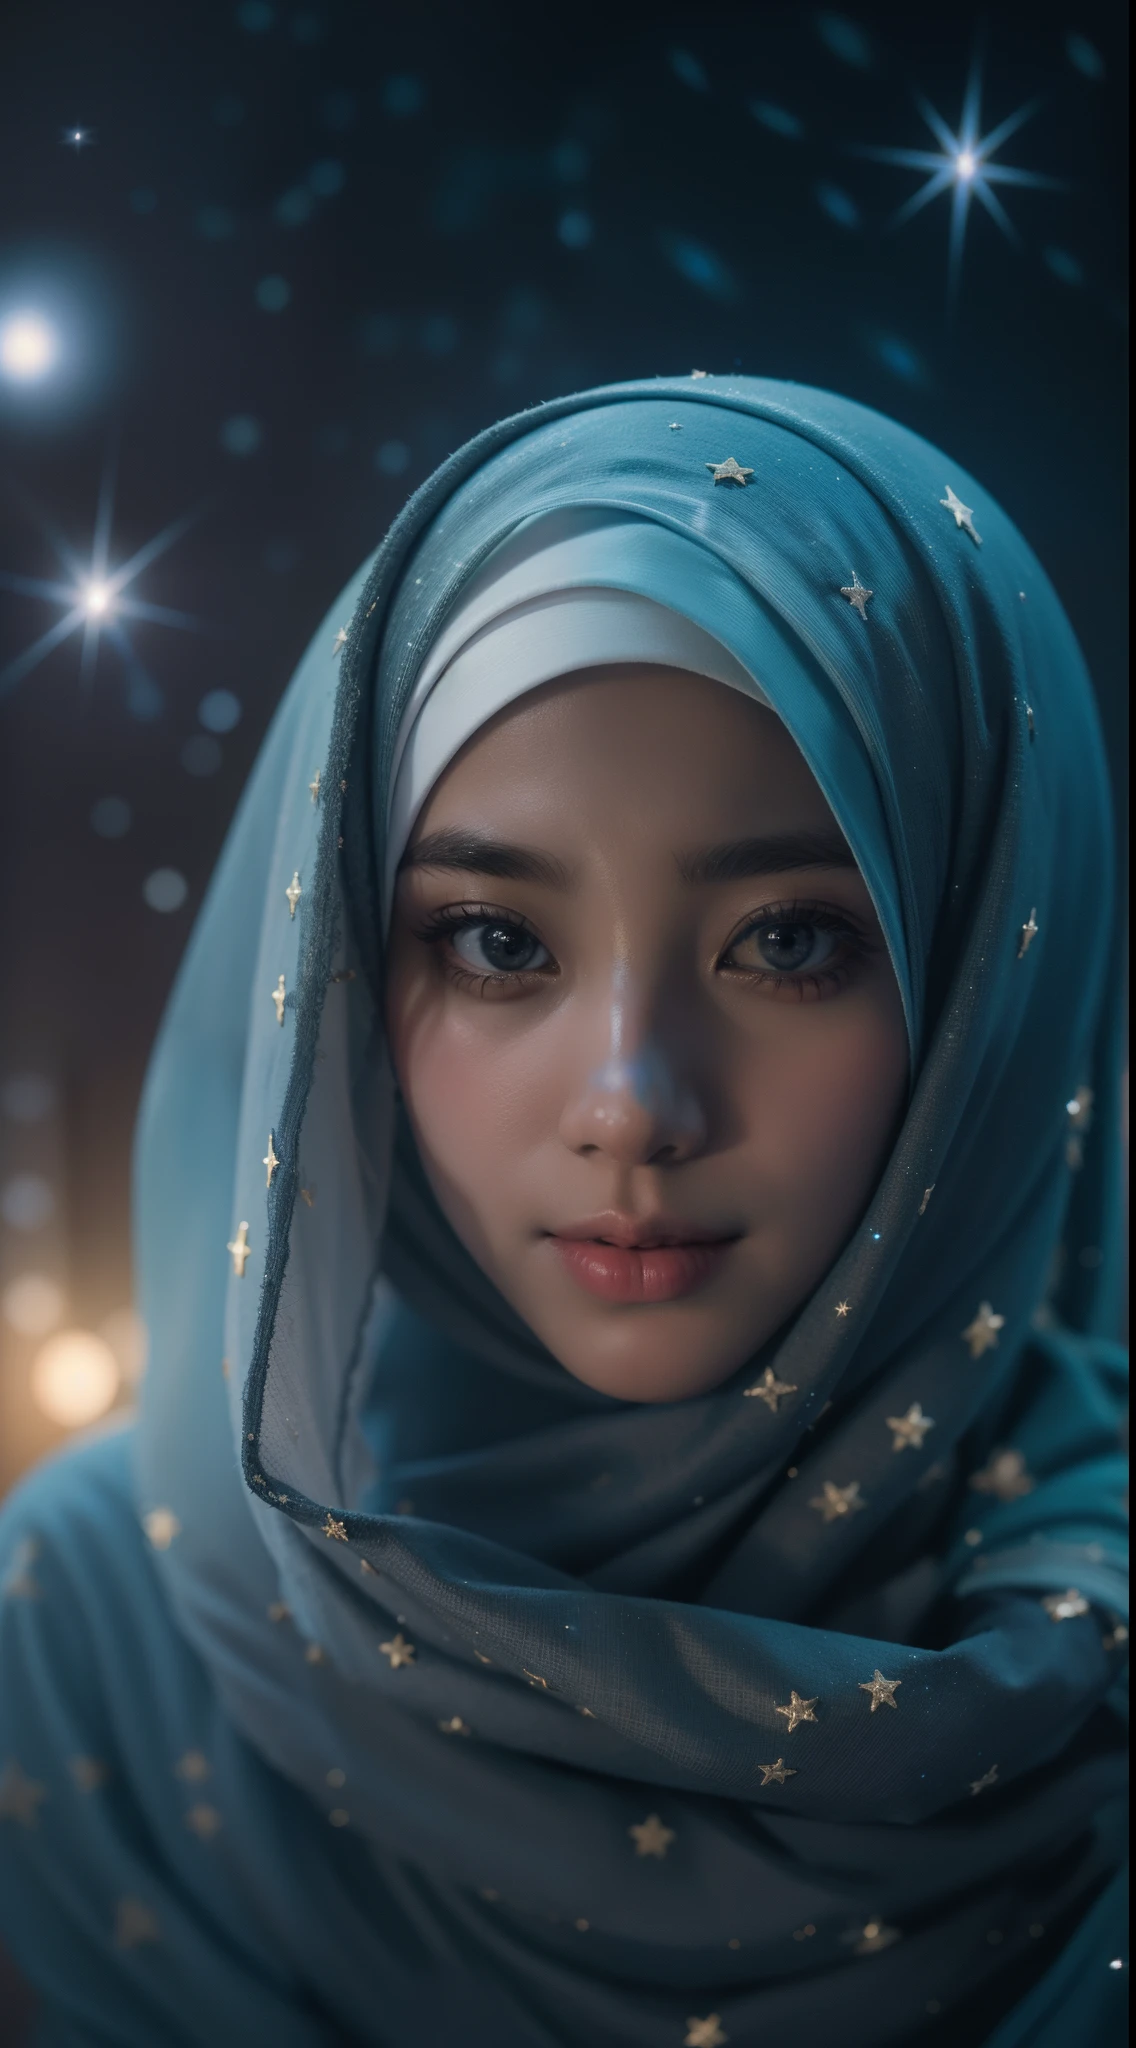 Crie um retrato com tema celestial de uma garota malaia usando hijab. Ilumine o hijab com estrelas e galáxias, misturando o terreno com o cósmico em uma composição hipnotizante e etérea, 8mm, close-up, classificação de cores em tons frios, profundidade de campo, filme sombrio